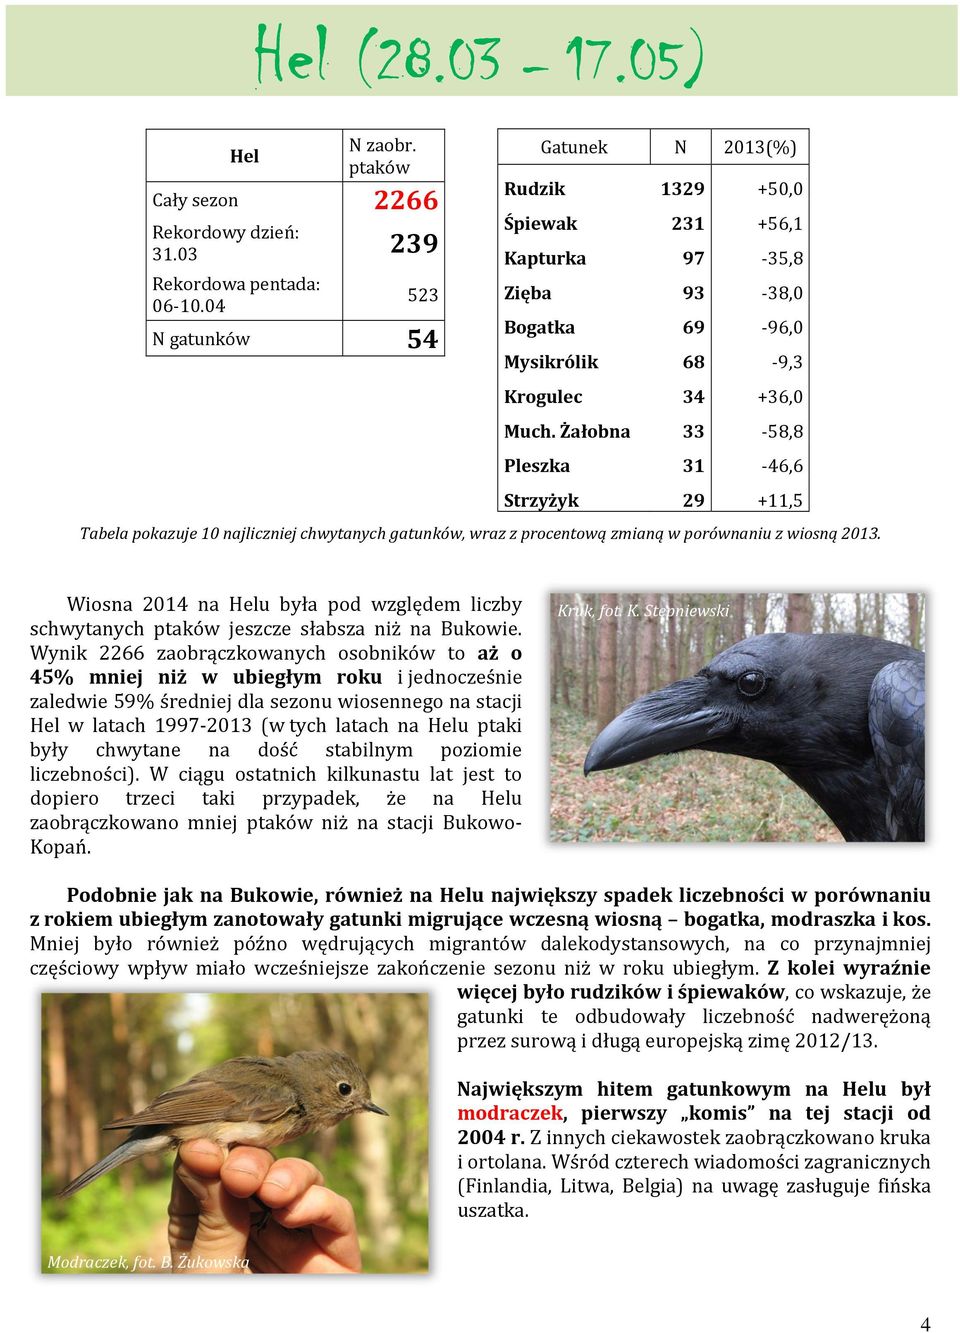 Żałobna 33-58,8 Pleszka 31-46,6 Strzyżyk 29 +11,5 Tabela pokazuje 10 najliczniej chwytanych gatunków, wraz z procentową zmianą w porównaniu z wiosną 2013.